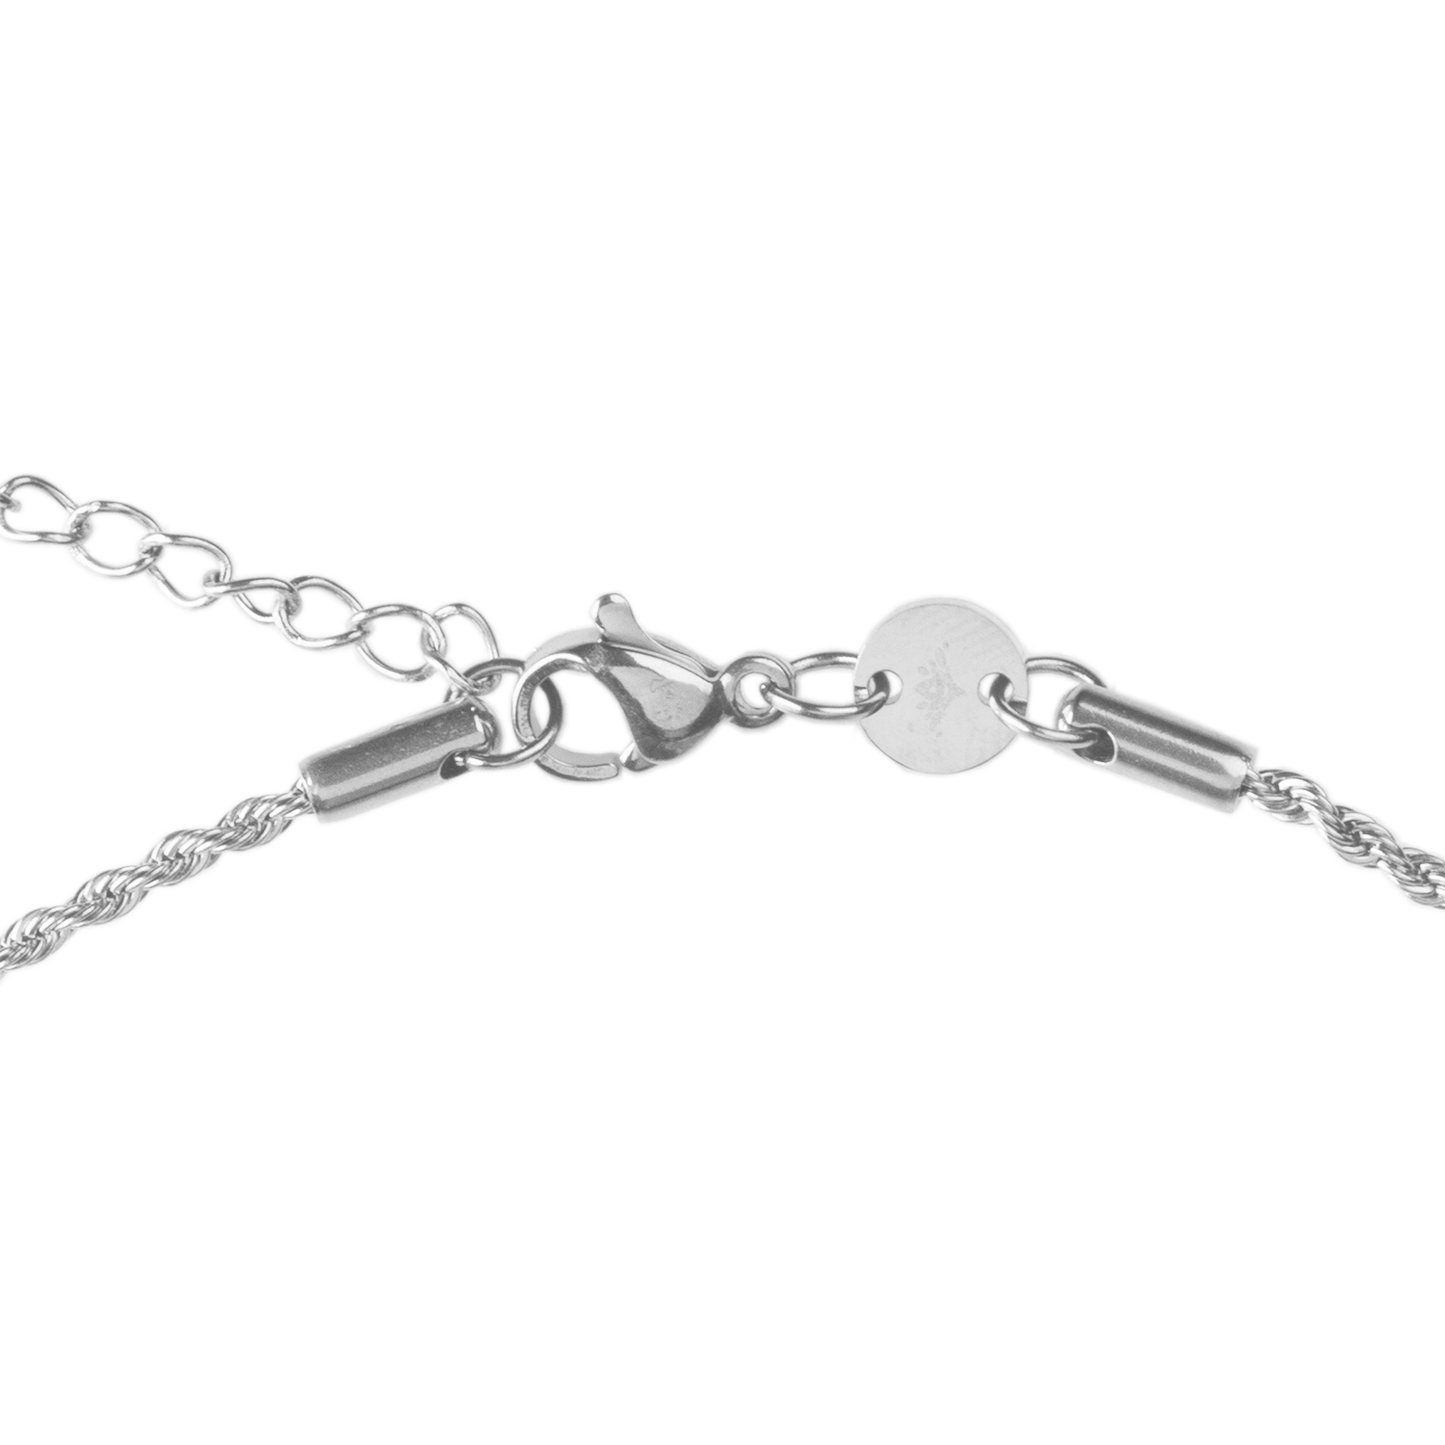 Gemini Necklace Silver